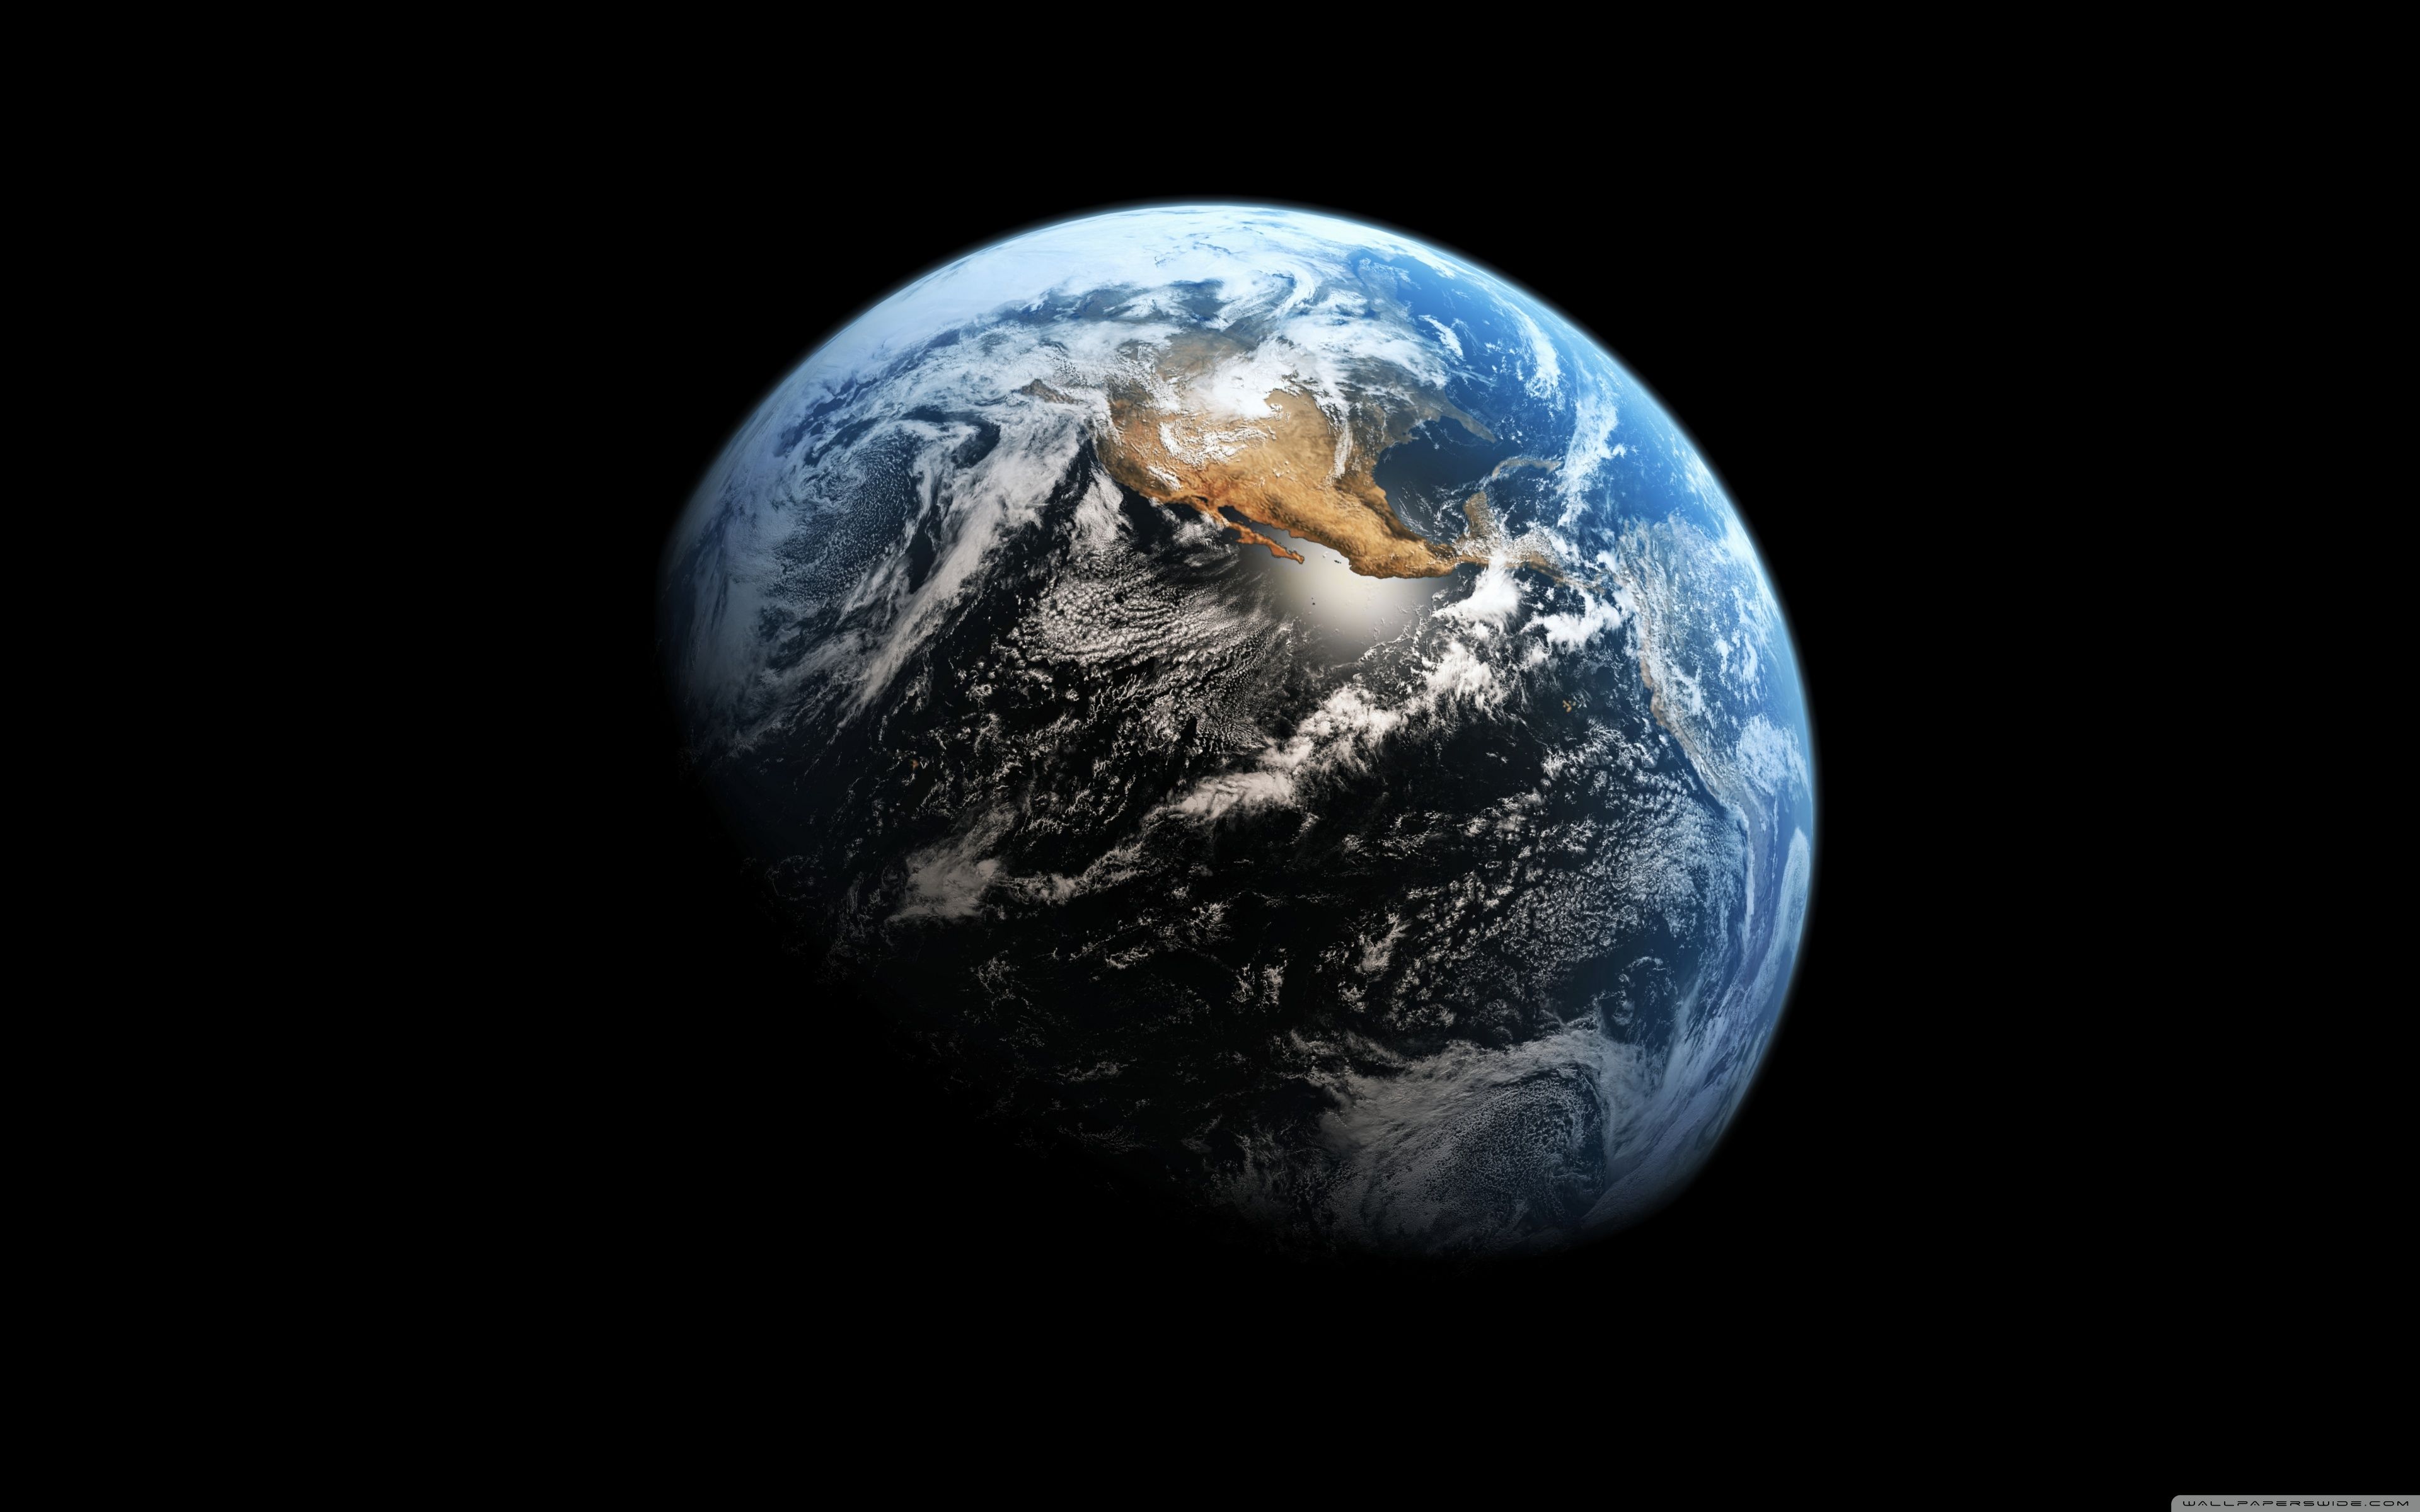  Erde Hintergrundbild 3840x2400. 4K Earth Wallpaper Free 4K Earth Background